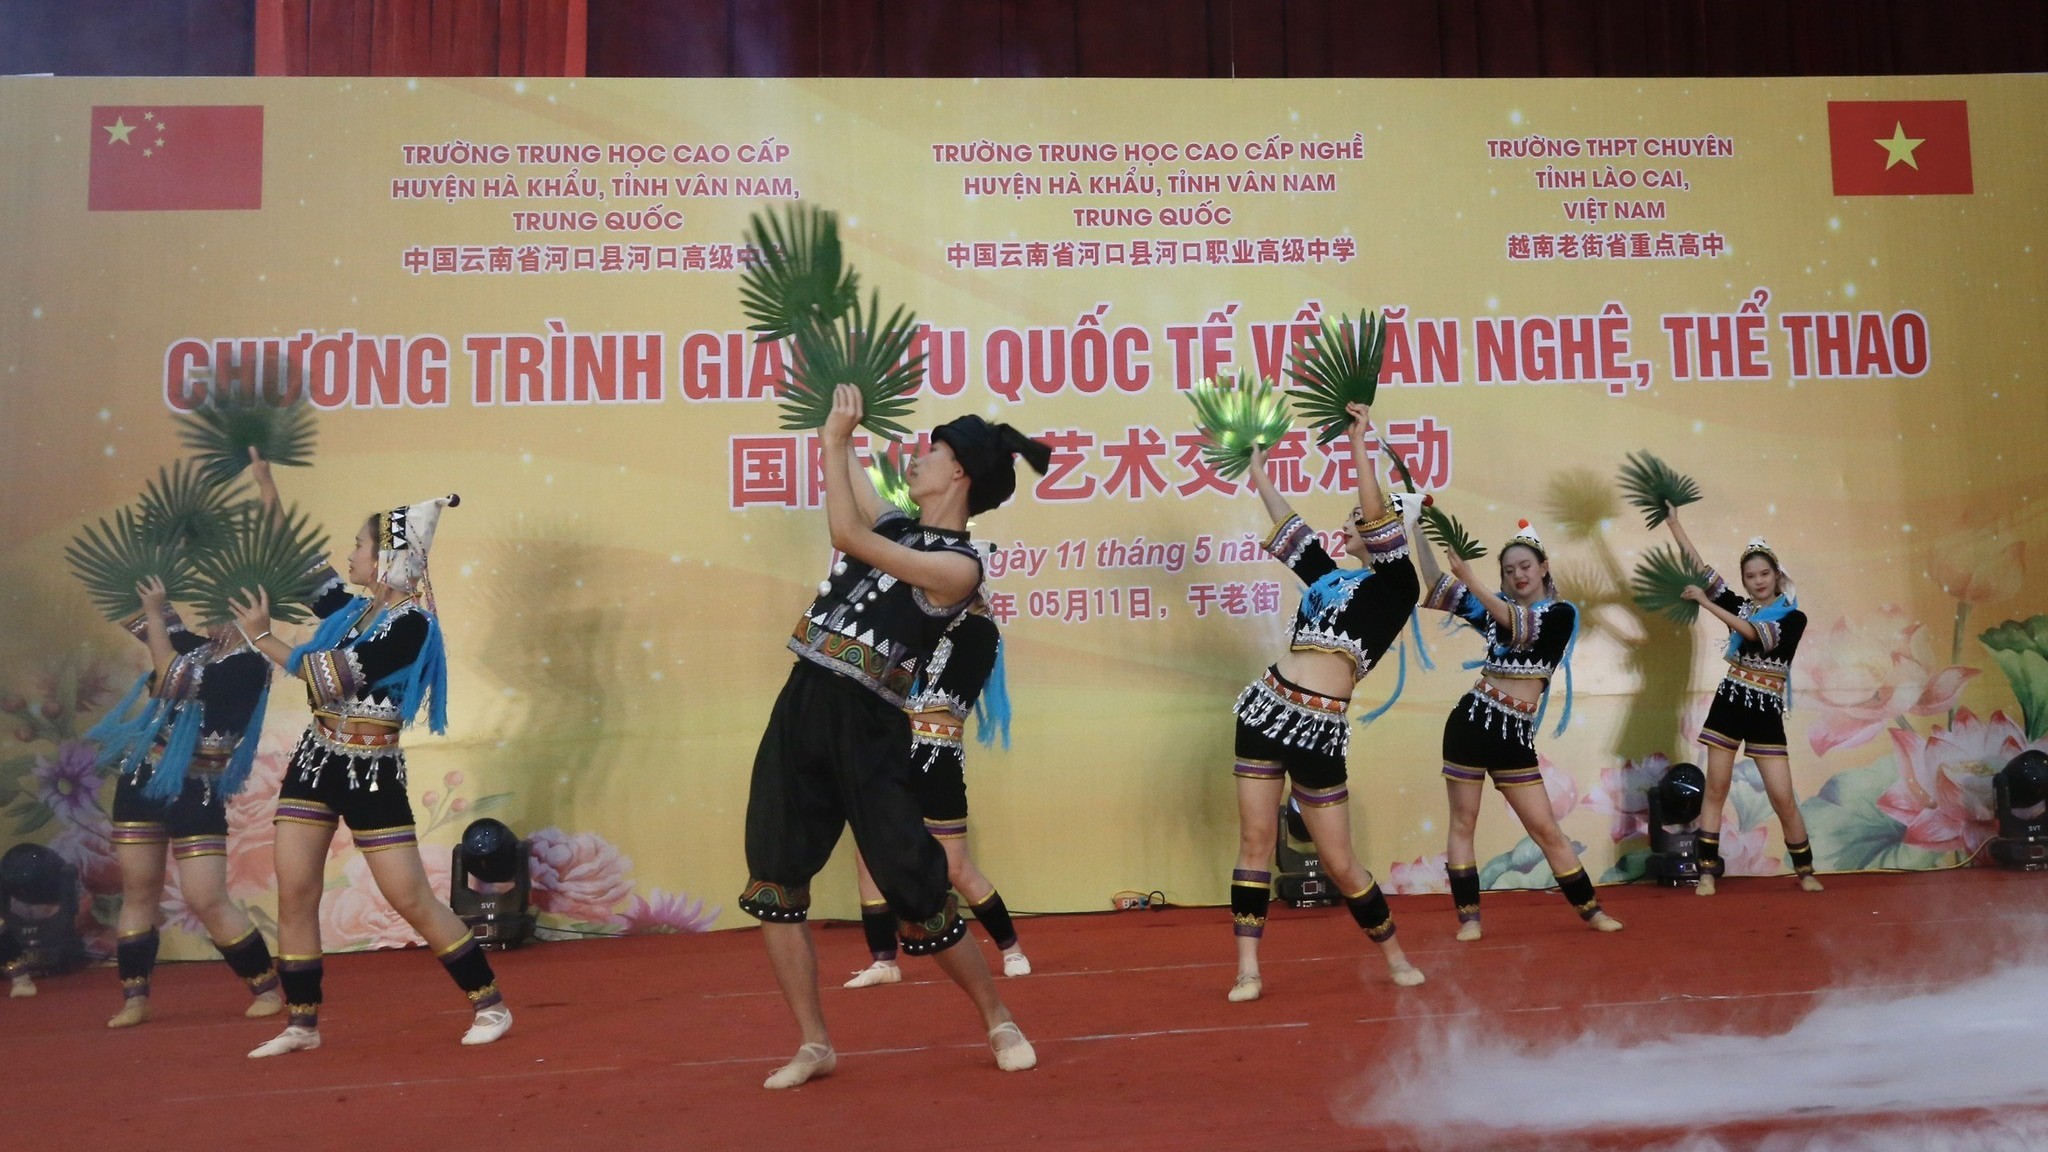 Giao lưu văn nghệ, thể thao gắn kết tình hữu nghị giữa Lào Cai (Việt Nam) và Hà Khẩu (Trung Quốc)